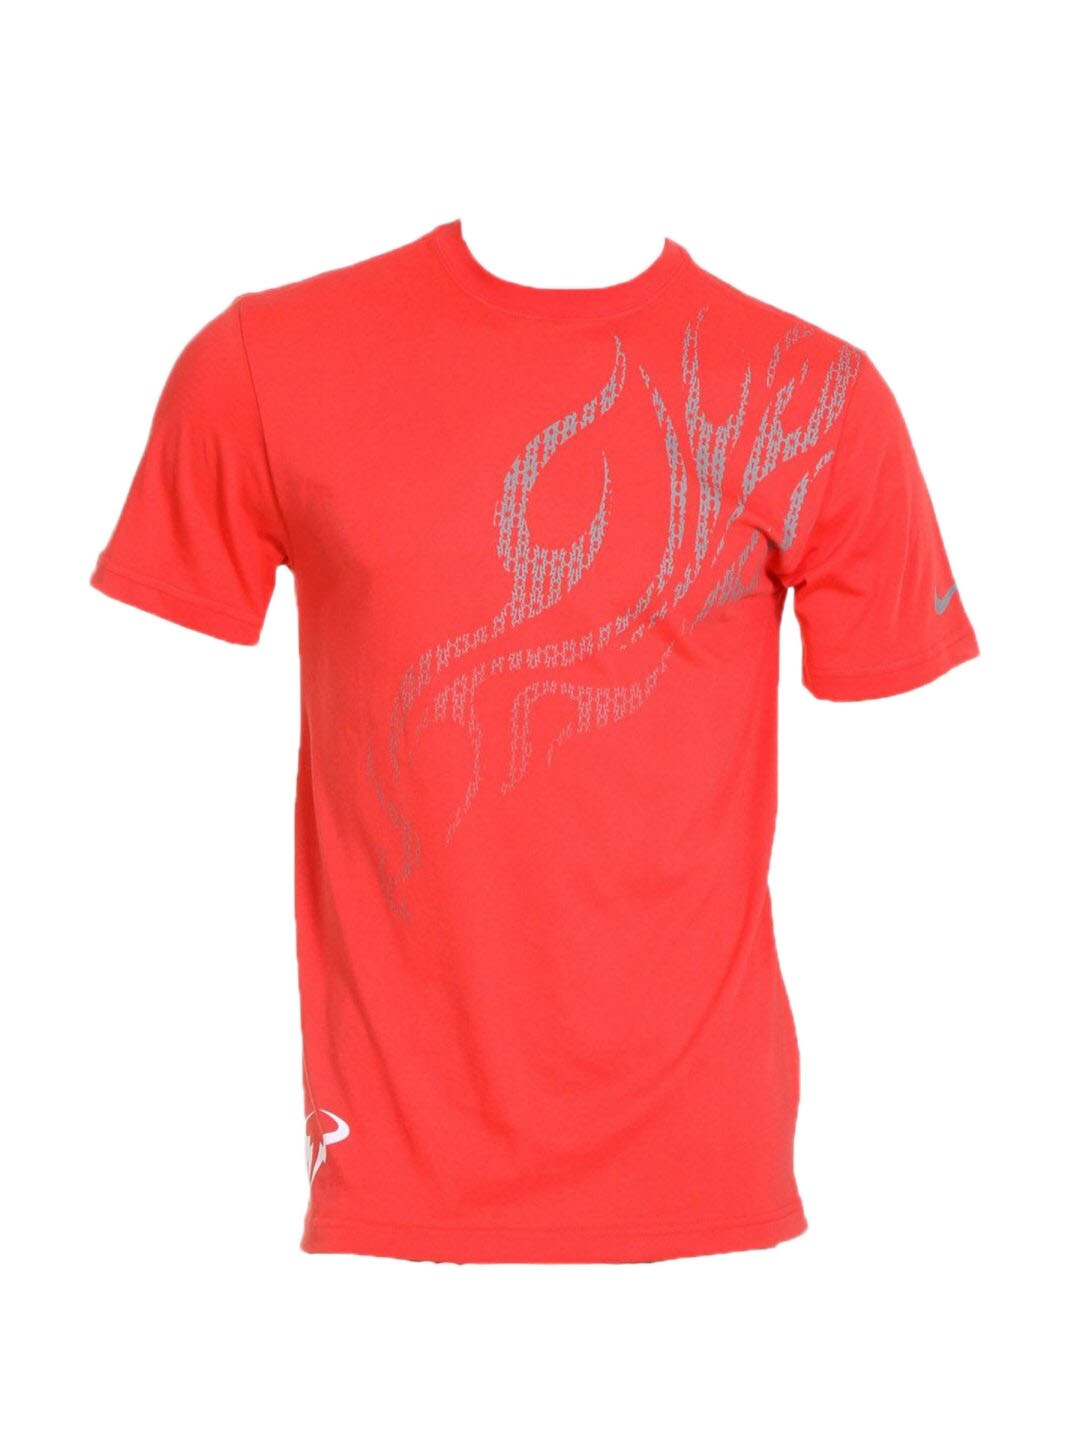 Nike Mens Raffel Red T-shirt